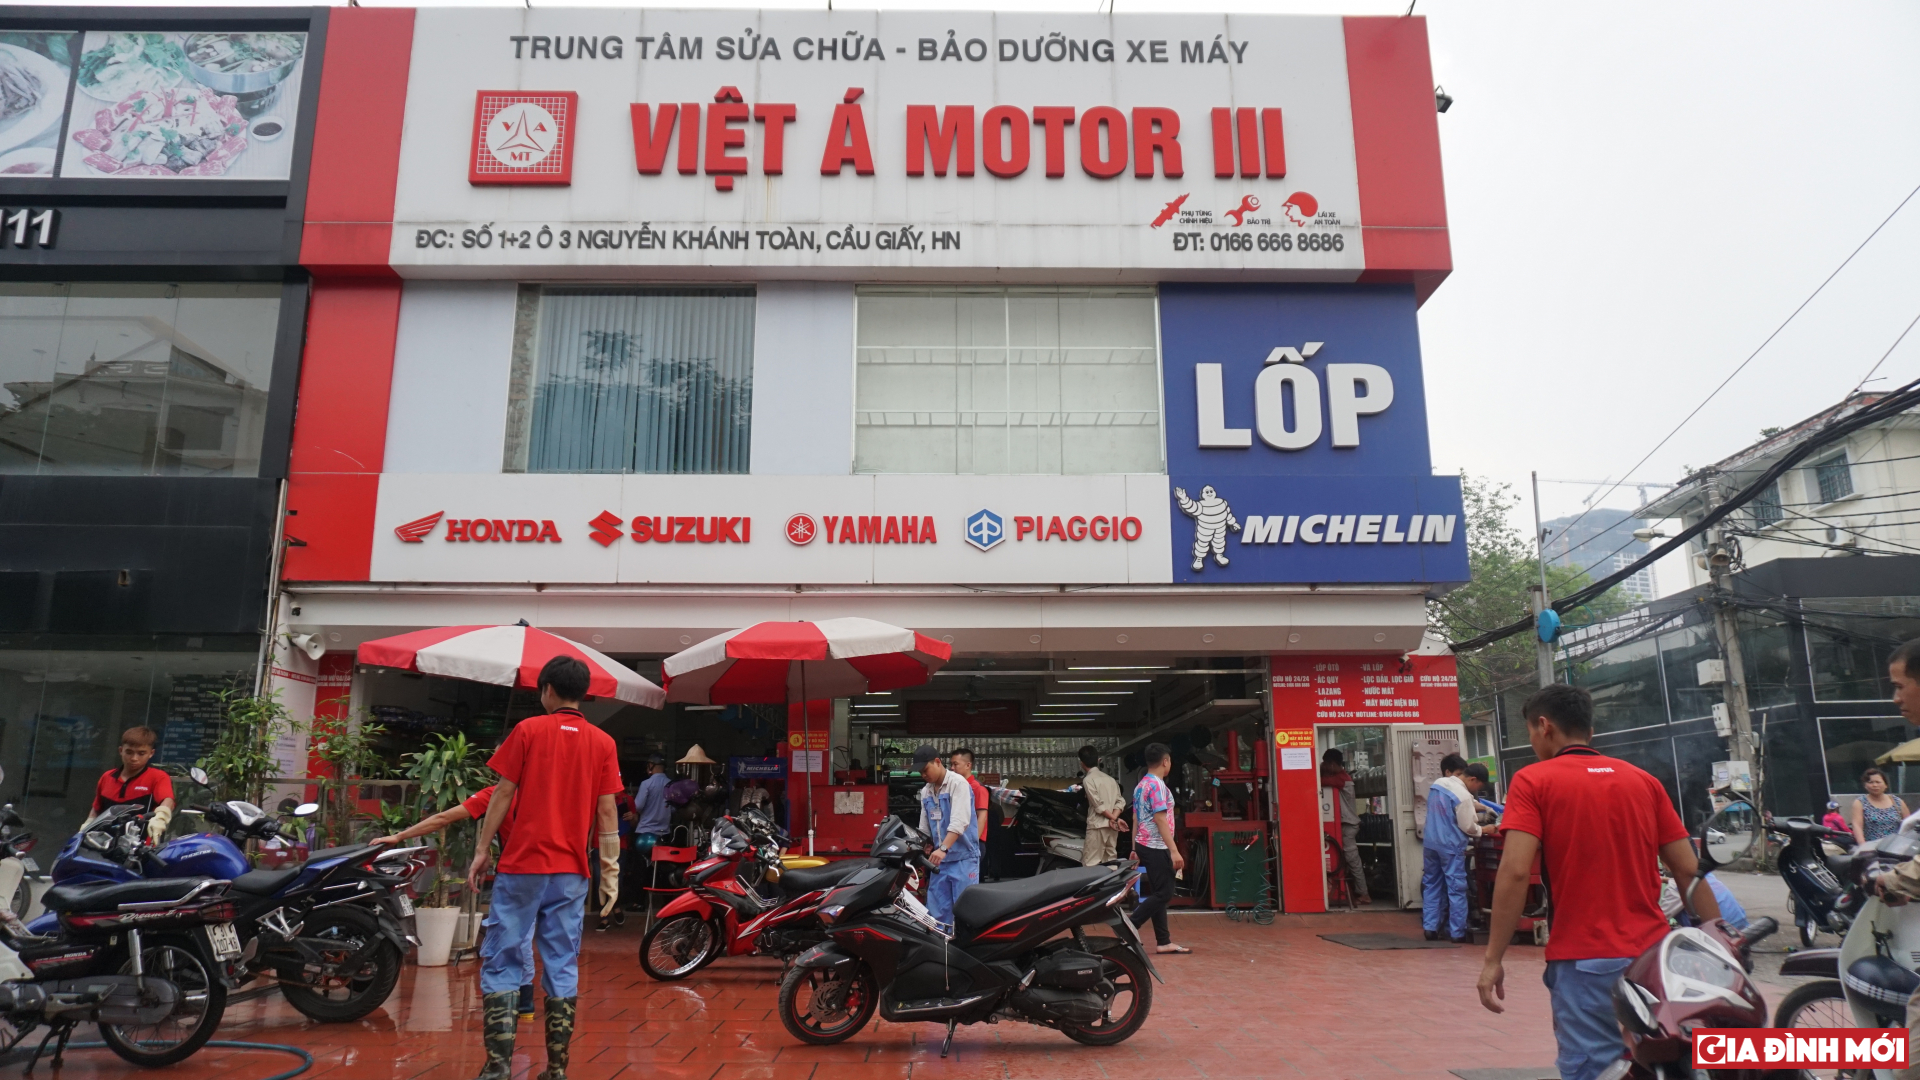 Cùng các chuyên gia tại Việt Á Motor điểm ra những thói quen xấu khi đi xe tay ga của phụ nữ